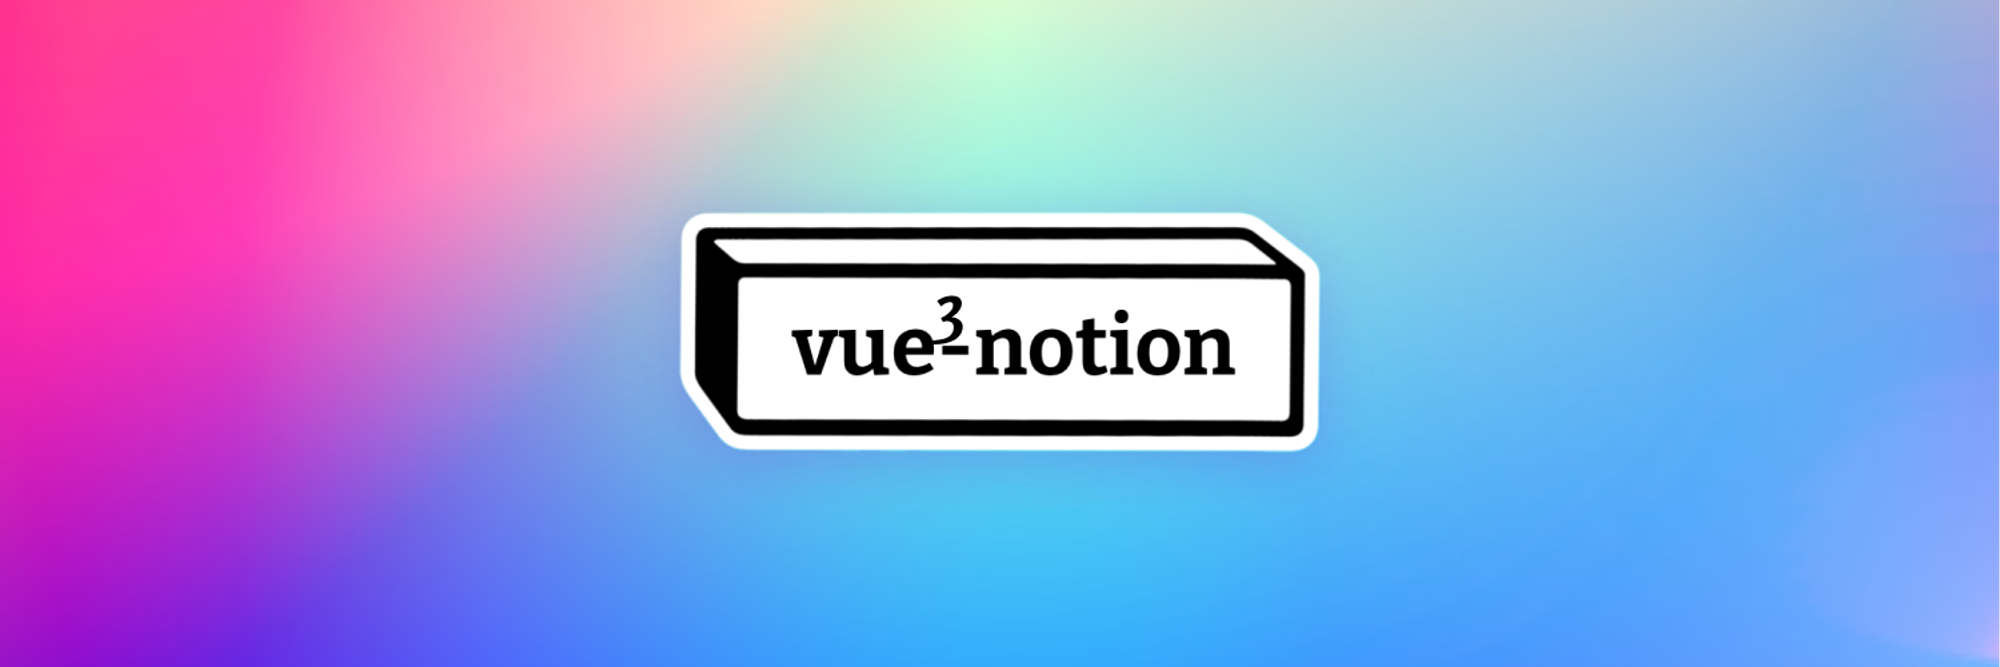 Vue3-Notion